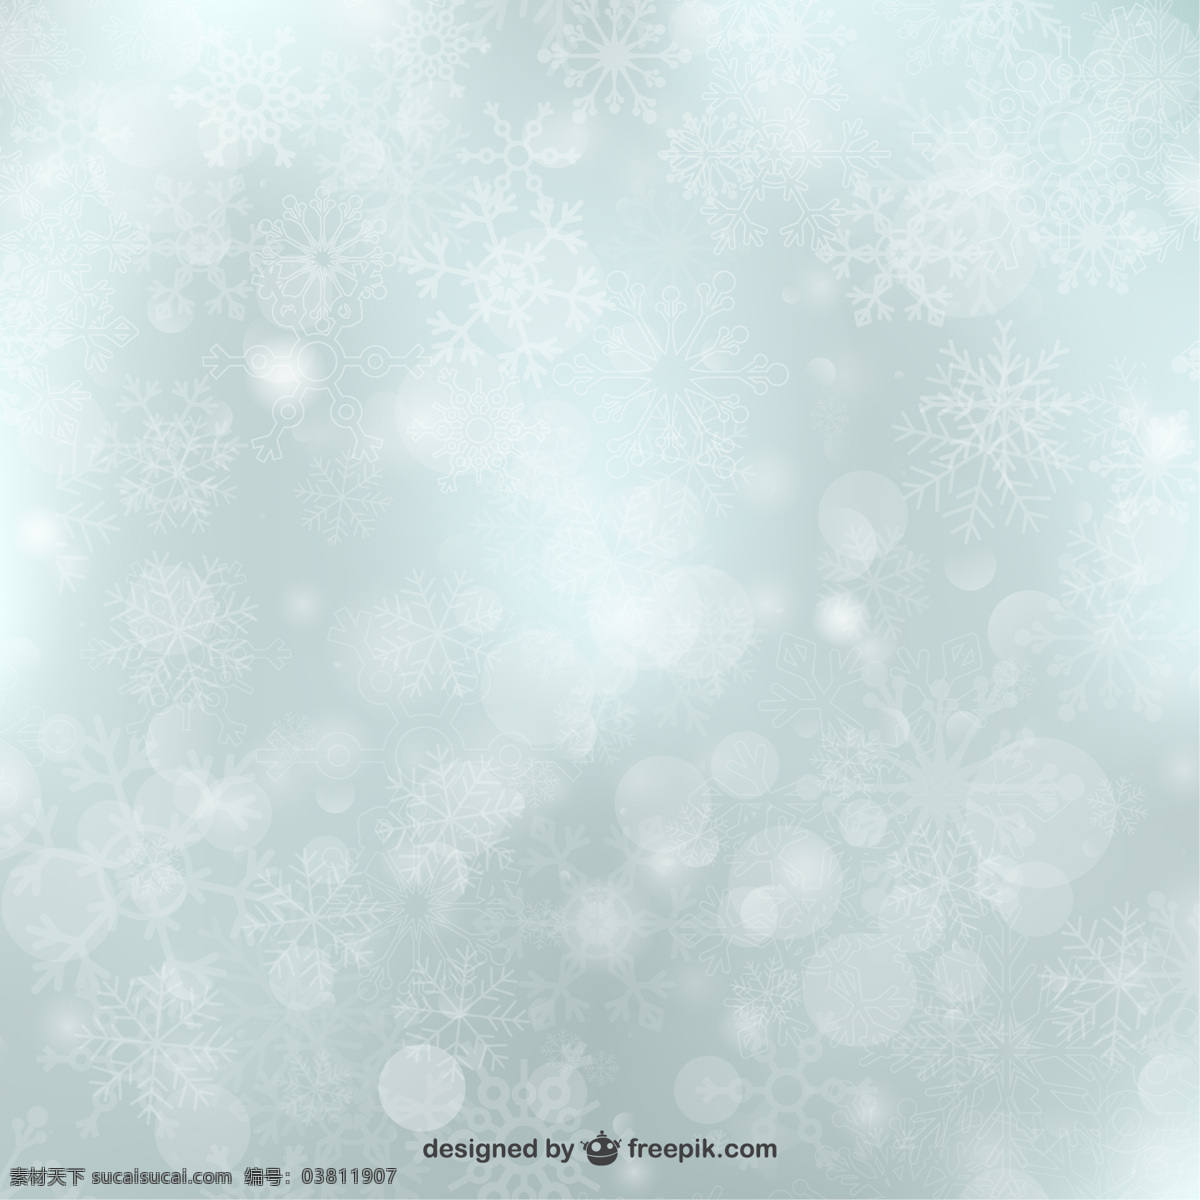 闪亮 圣诞 雪花 背景 圣诞节 抽象的 雪 冬天 圣诞节背景 阳光 冬天的背景 明亮 雪的背景 闪亮的背景 灰色